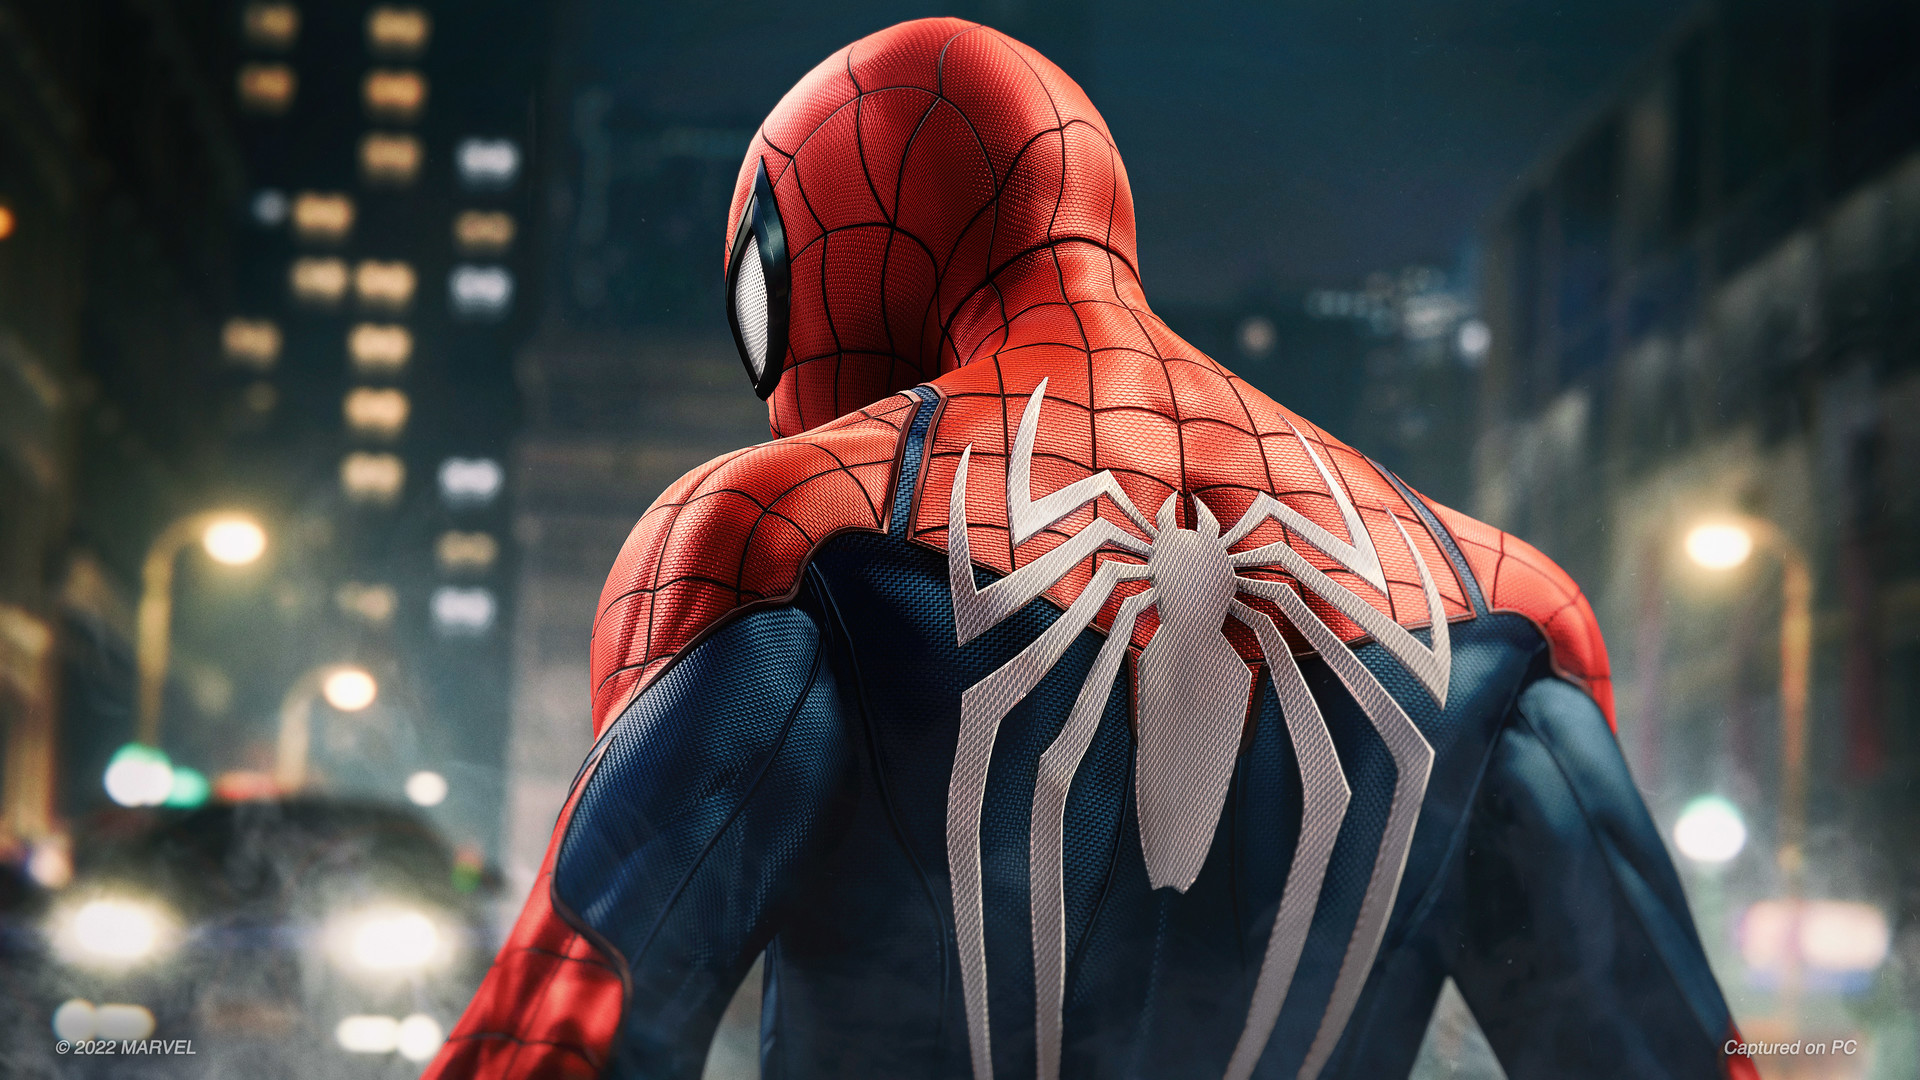 Spider-Man PS4: Web of Shadows #1 - Beginning 